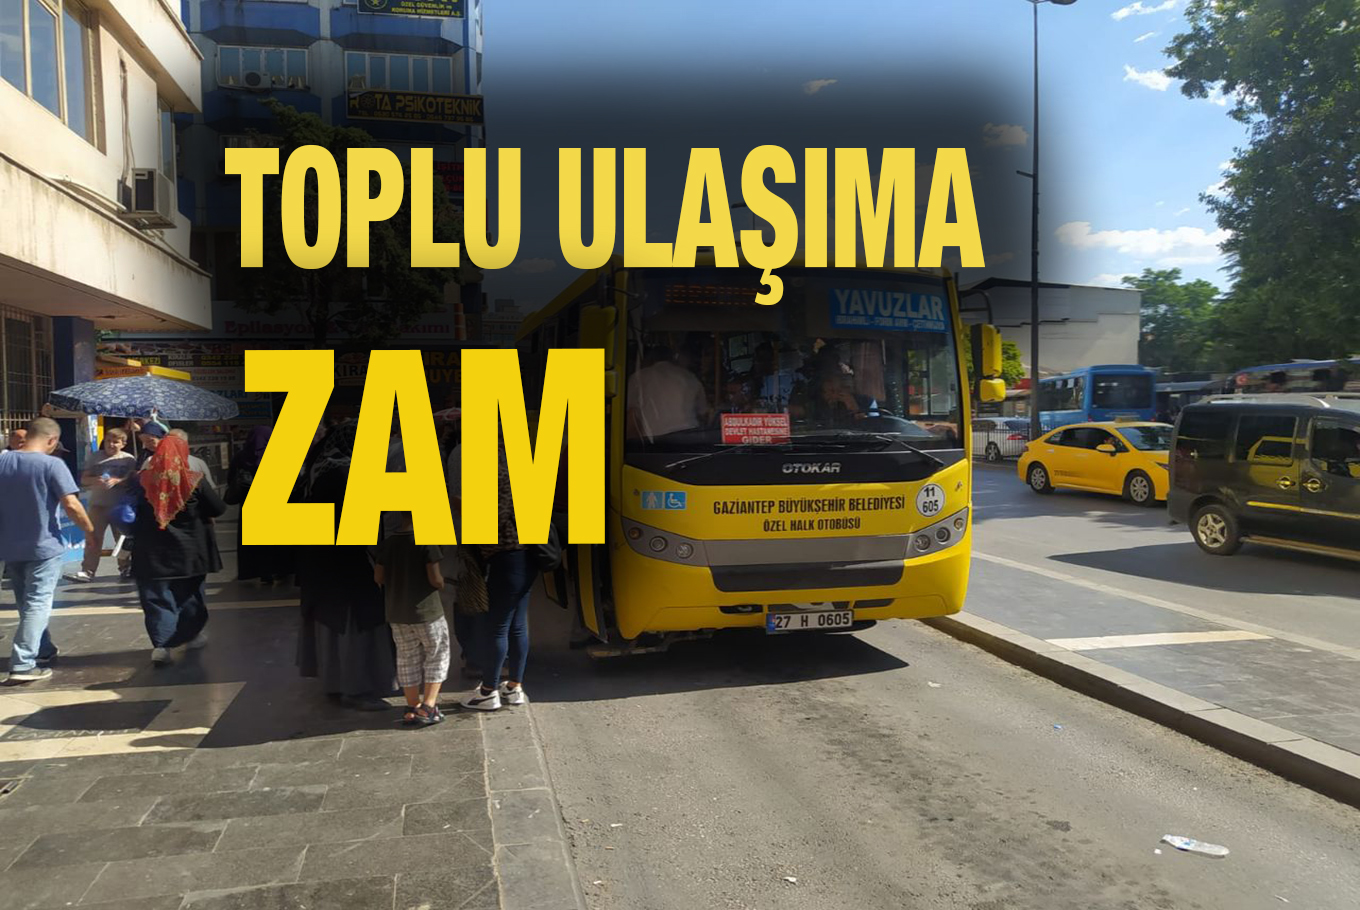 Gaziantep’te Kurban Bayramı öncesi toplu ulaşıma zam